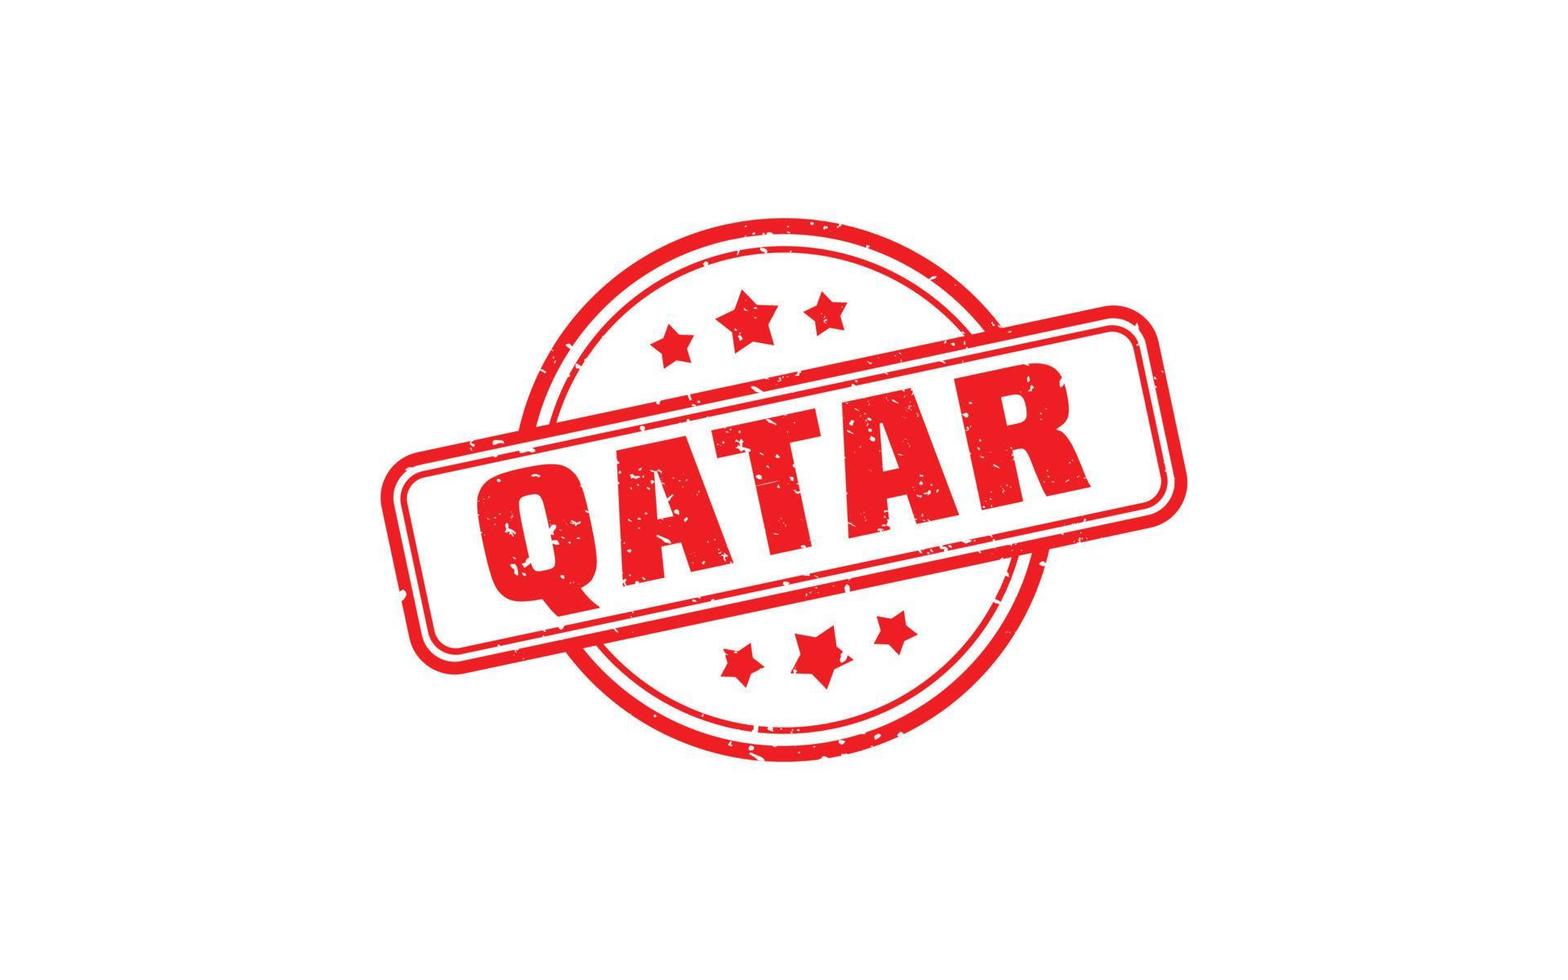 qatar stämpel sudd med grunge stil på vit bakgrund vektor